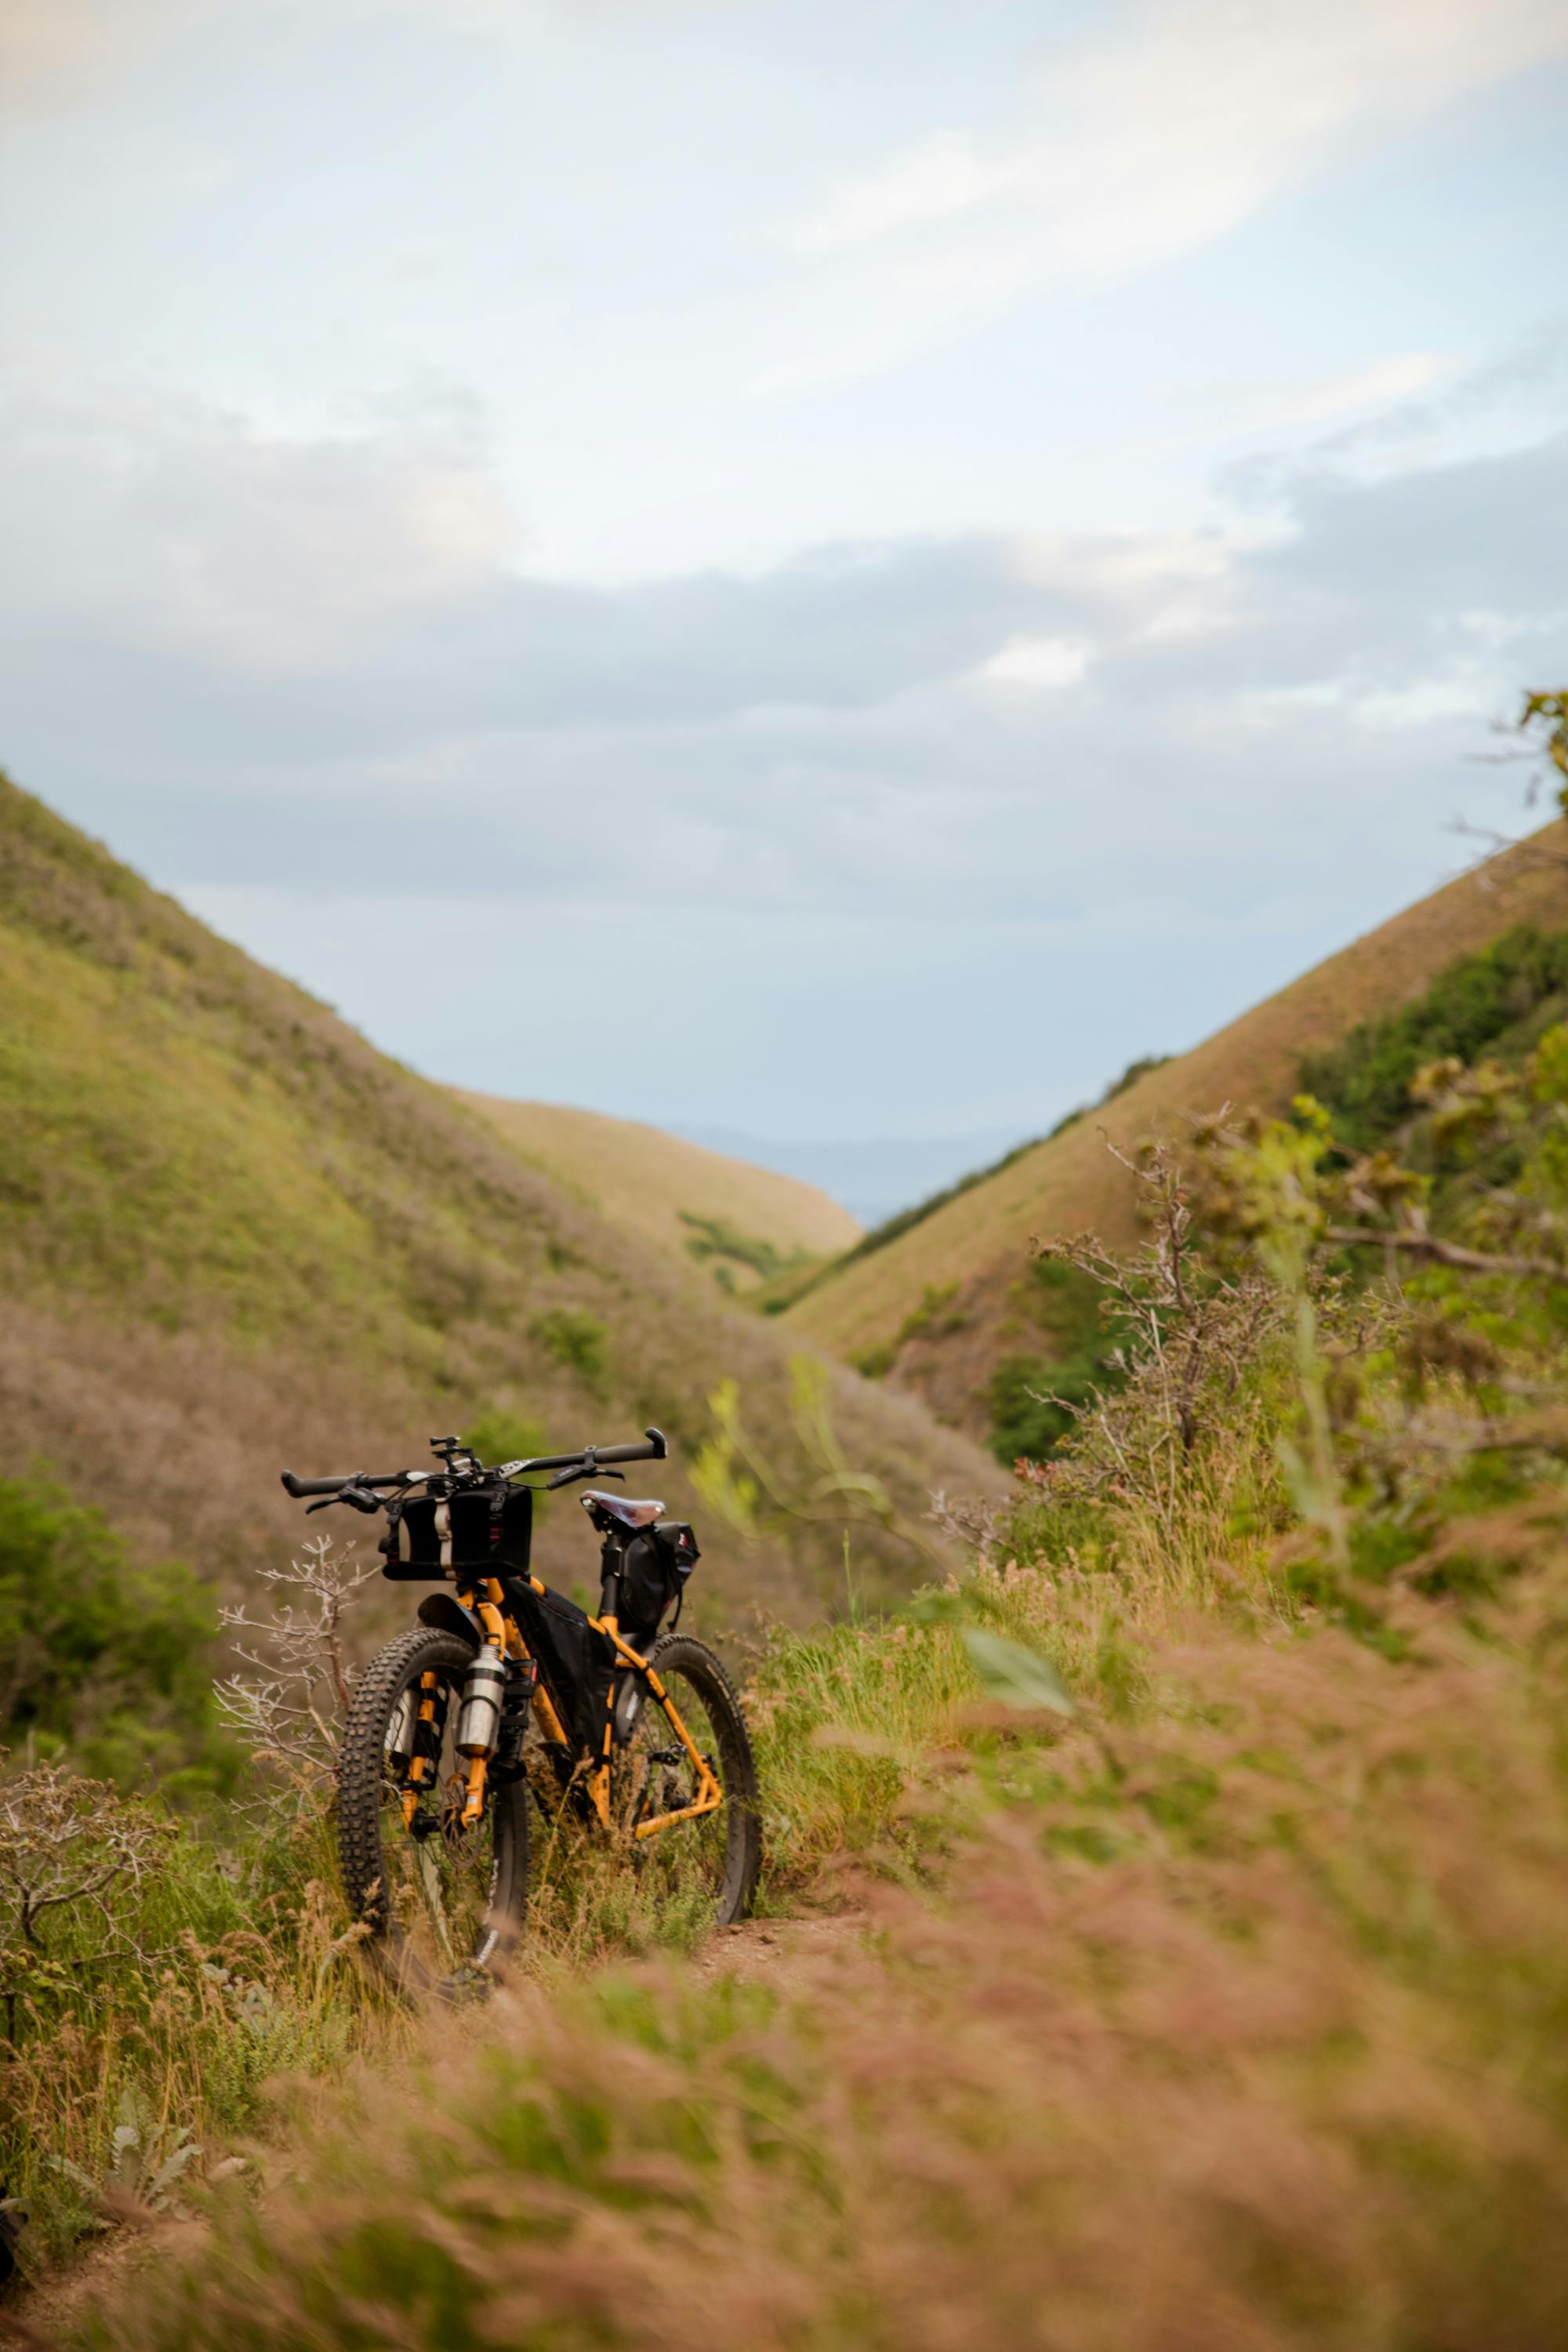 Mountainbike stoi samotnie w przyrodzie. W tle widać wiele wysokich pagórków porośniętych trawą.